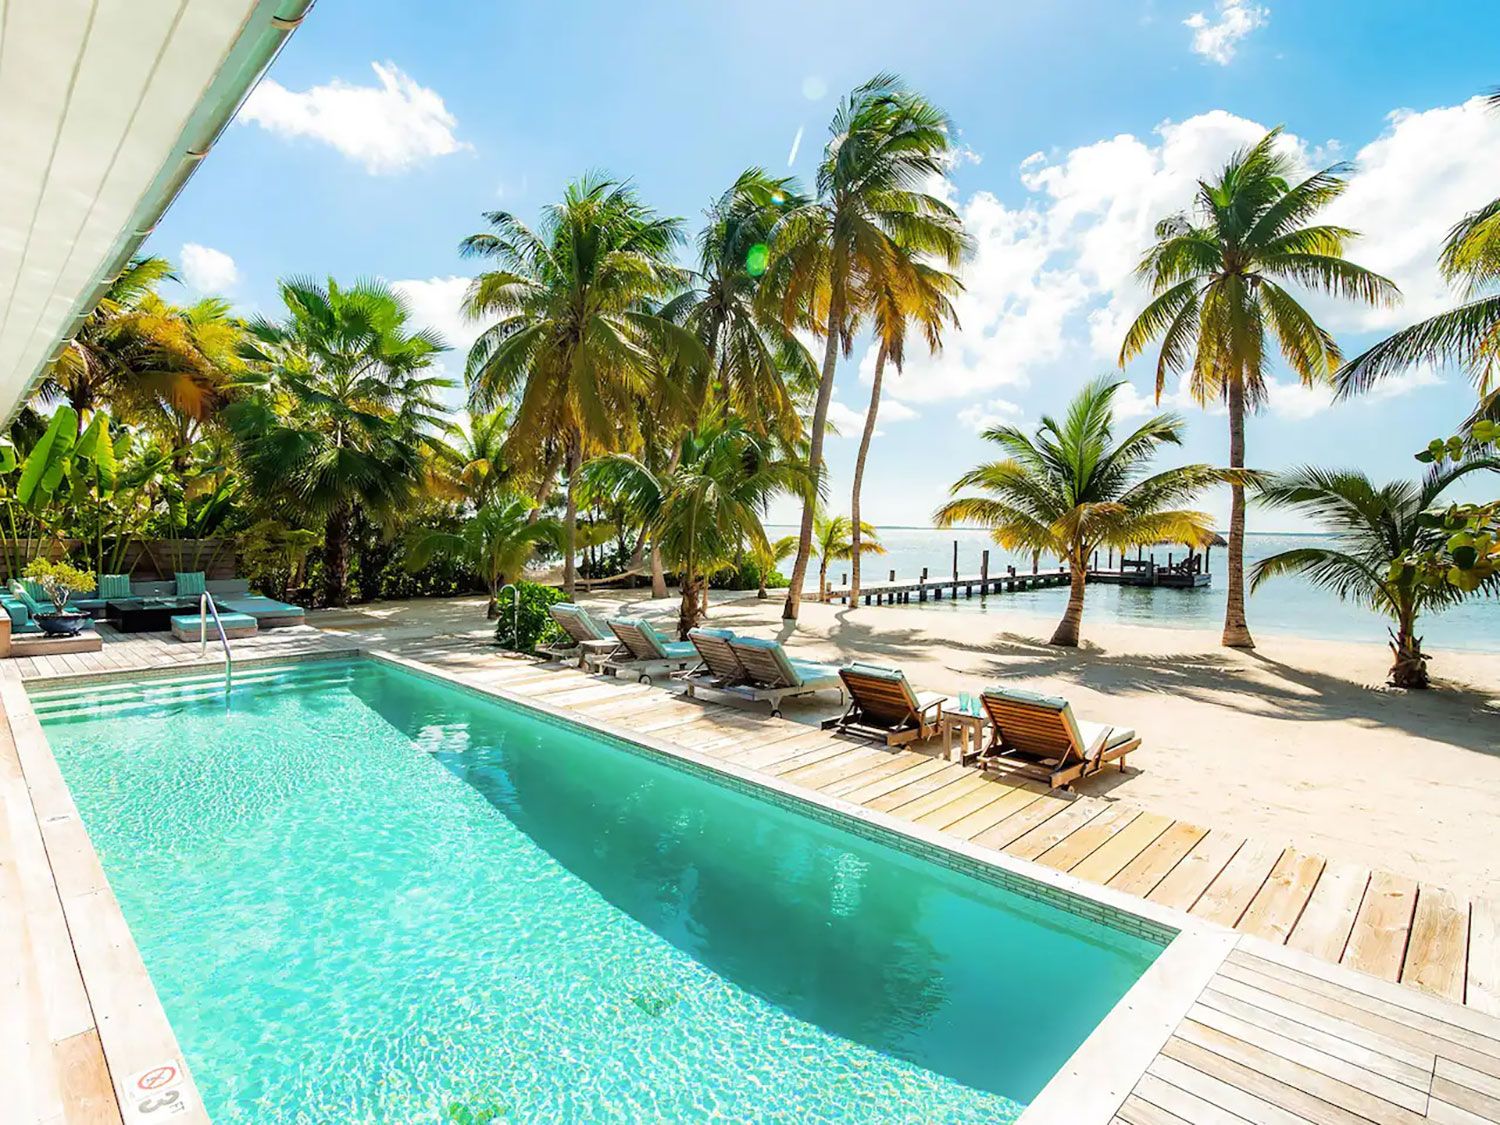 8 increíbles alquileres de Airbnb en las Islas Caimán 8